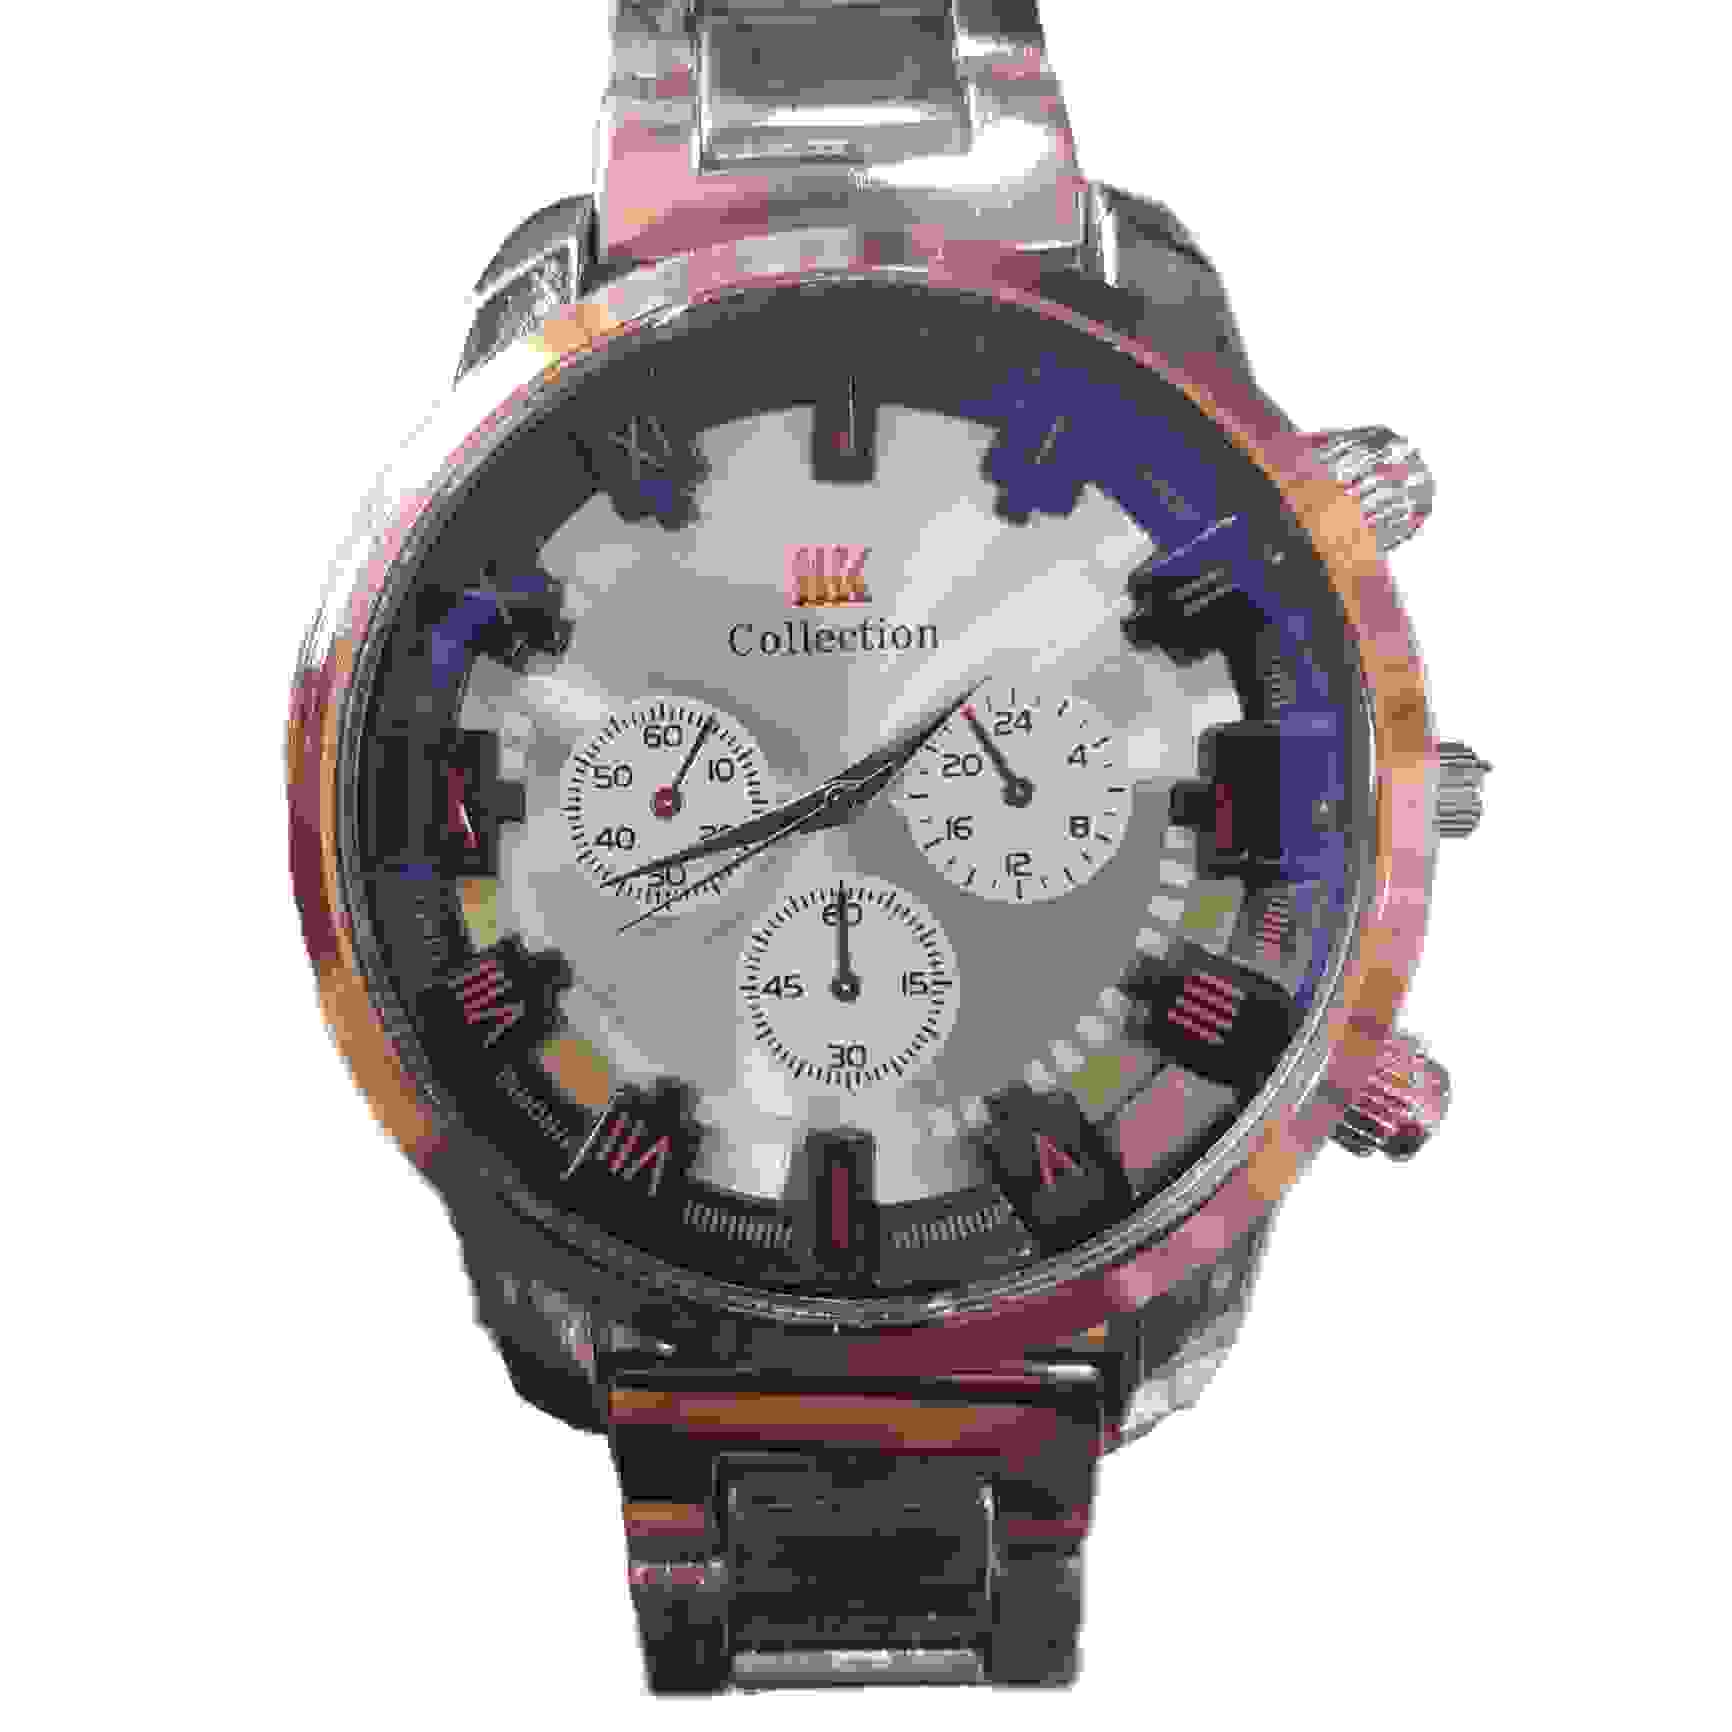 LIK collection quartz watch for men